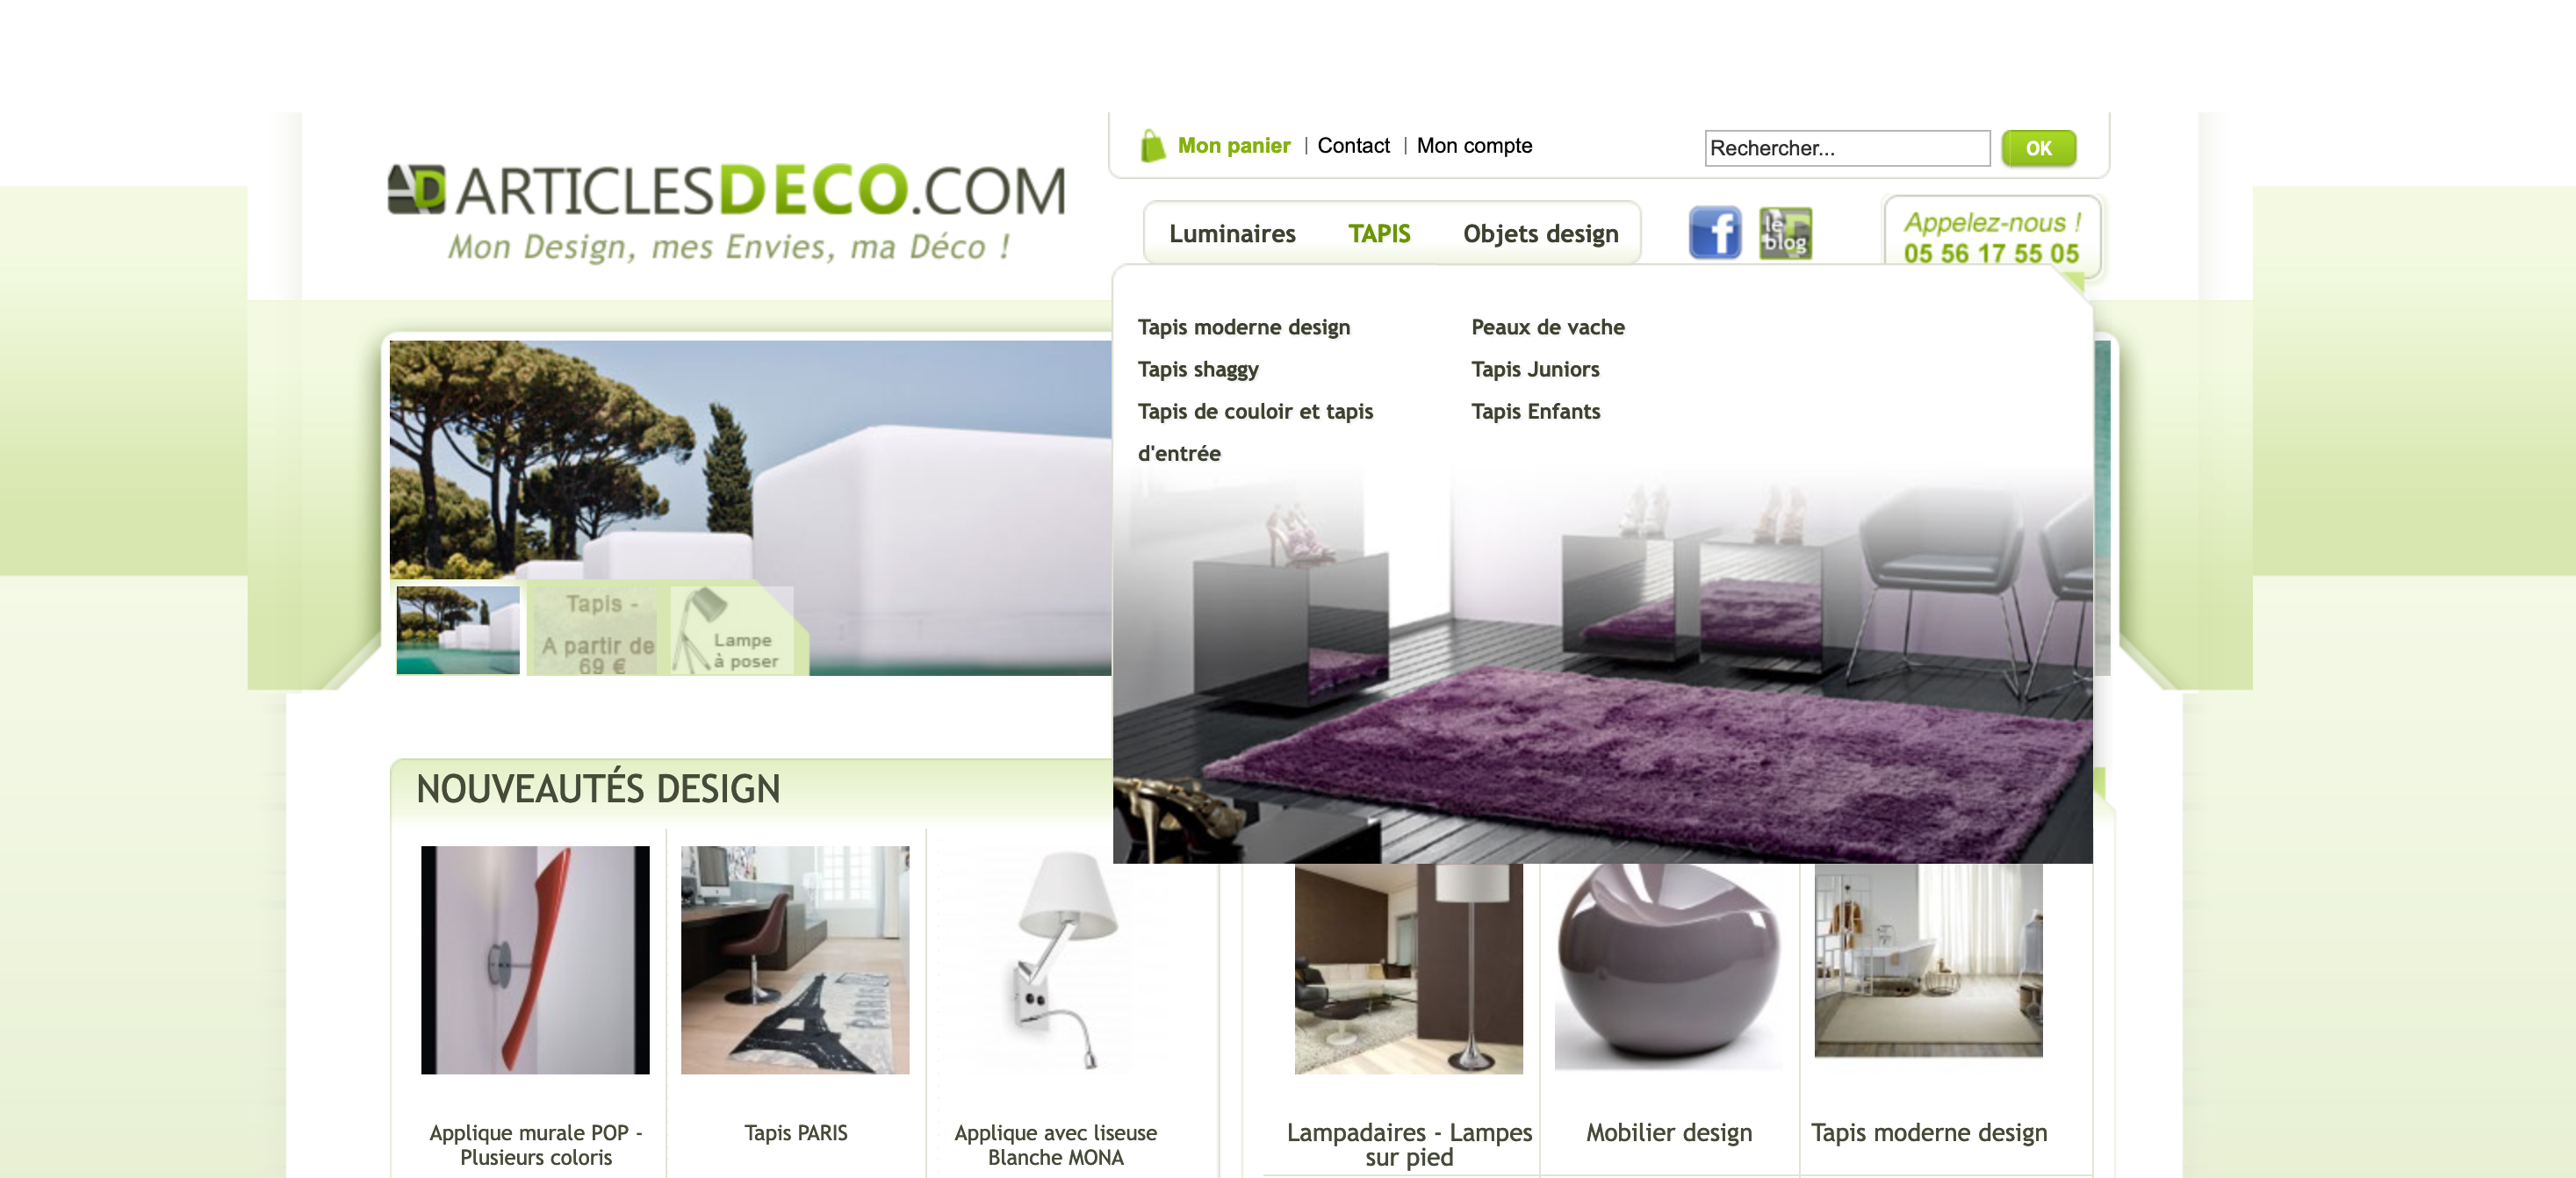 Site Magento pour un site ecommerce B2C de décoration